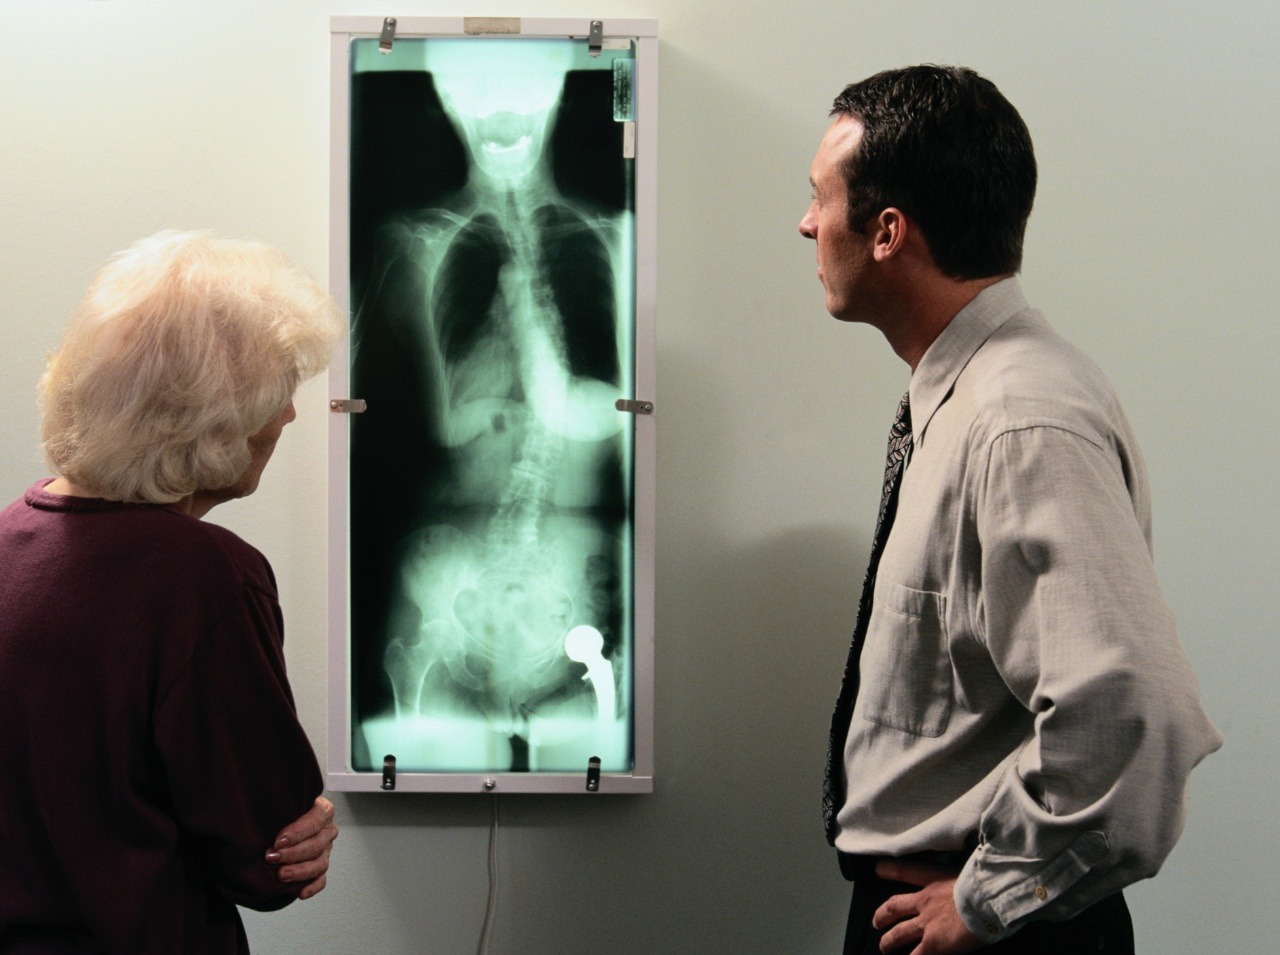 Žena išla na vyšetrenia a röntgen odhalil neuveriteľný nález v jej tele! (Ilustračná forografia)